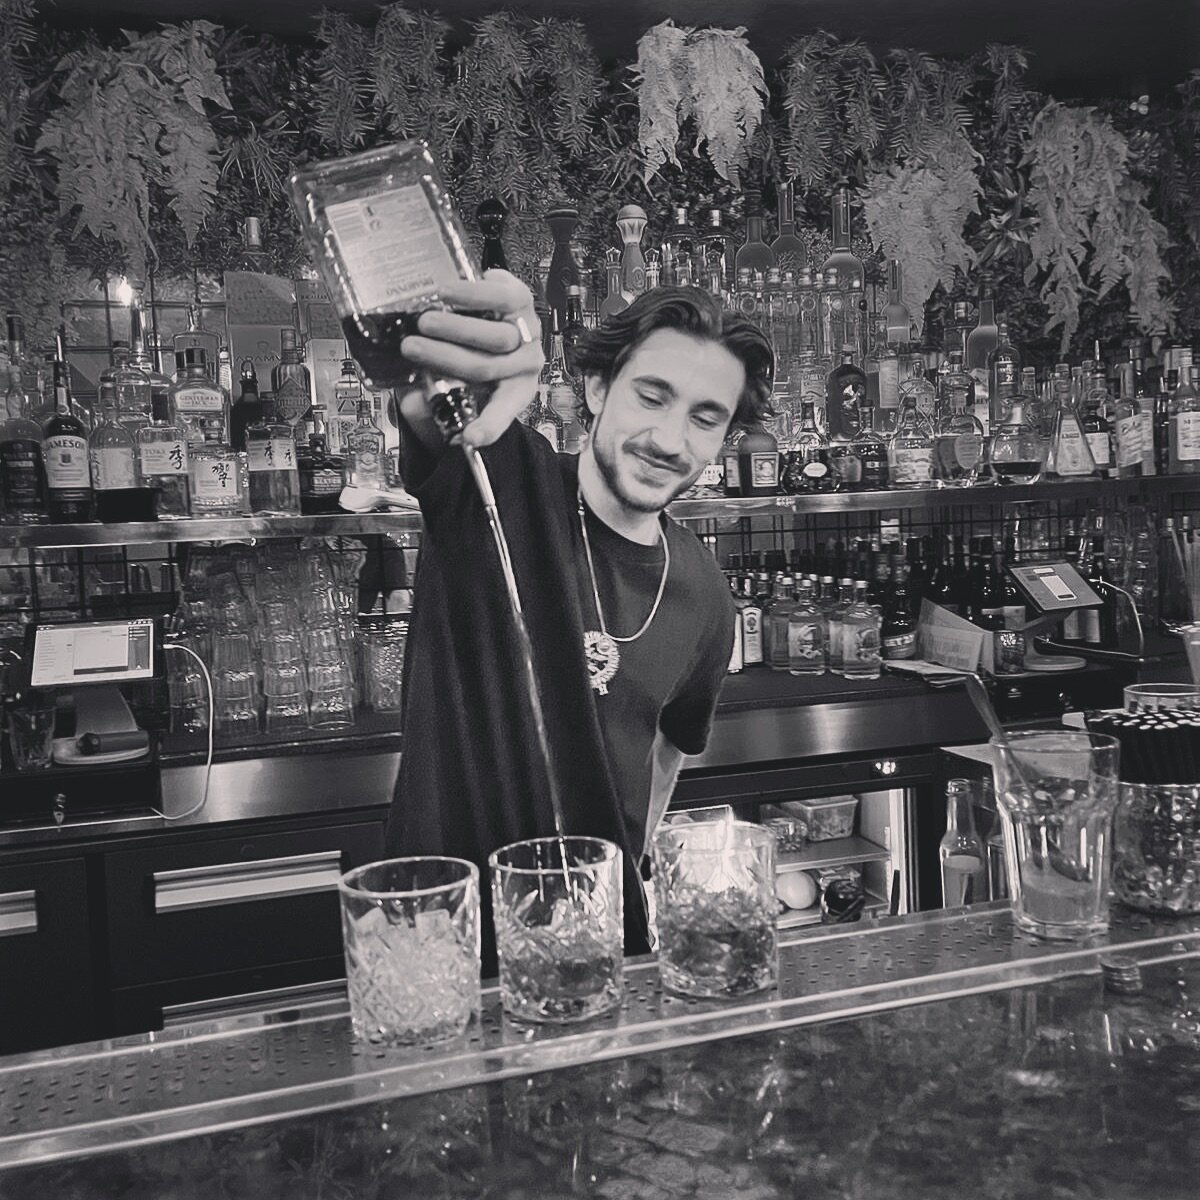 ✨ Behind the scenes ✨

On vous pr&eacute;sente D&eacute;m&eacute;, notre excellent barman ! Venez d&eacute;guster un bon petit cocktail au comptoir ; D&eacute;couverte gustative &amp; bonne humeur garantie ! 🤩

#bartender #chamonix #montblanc #epsyl